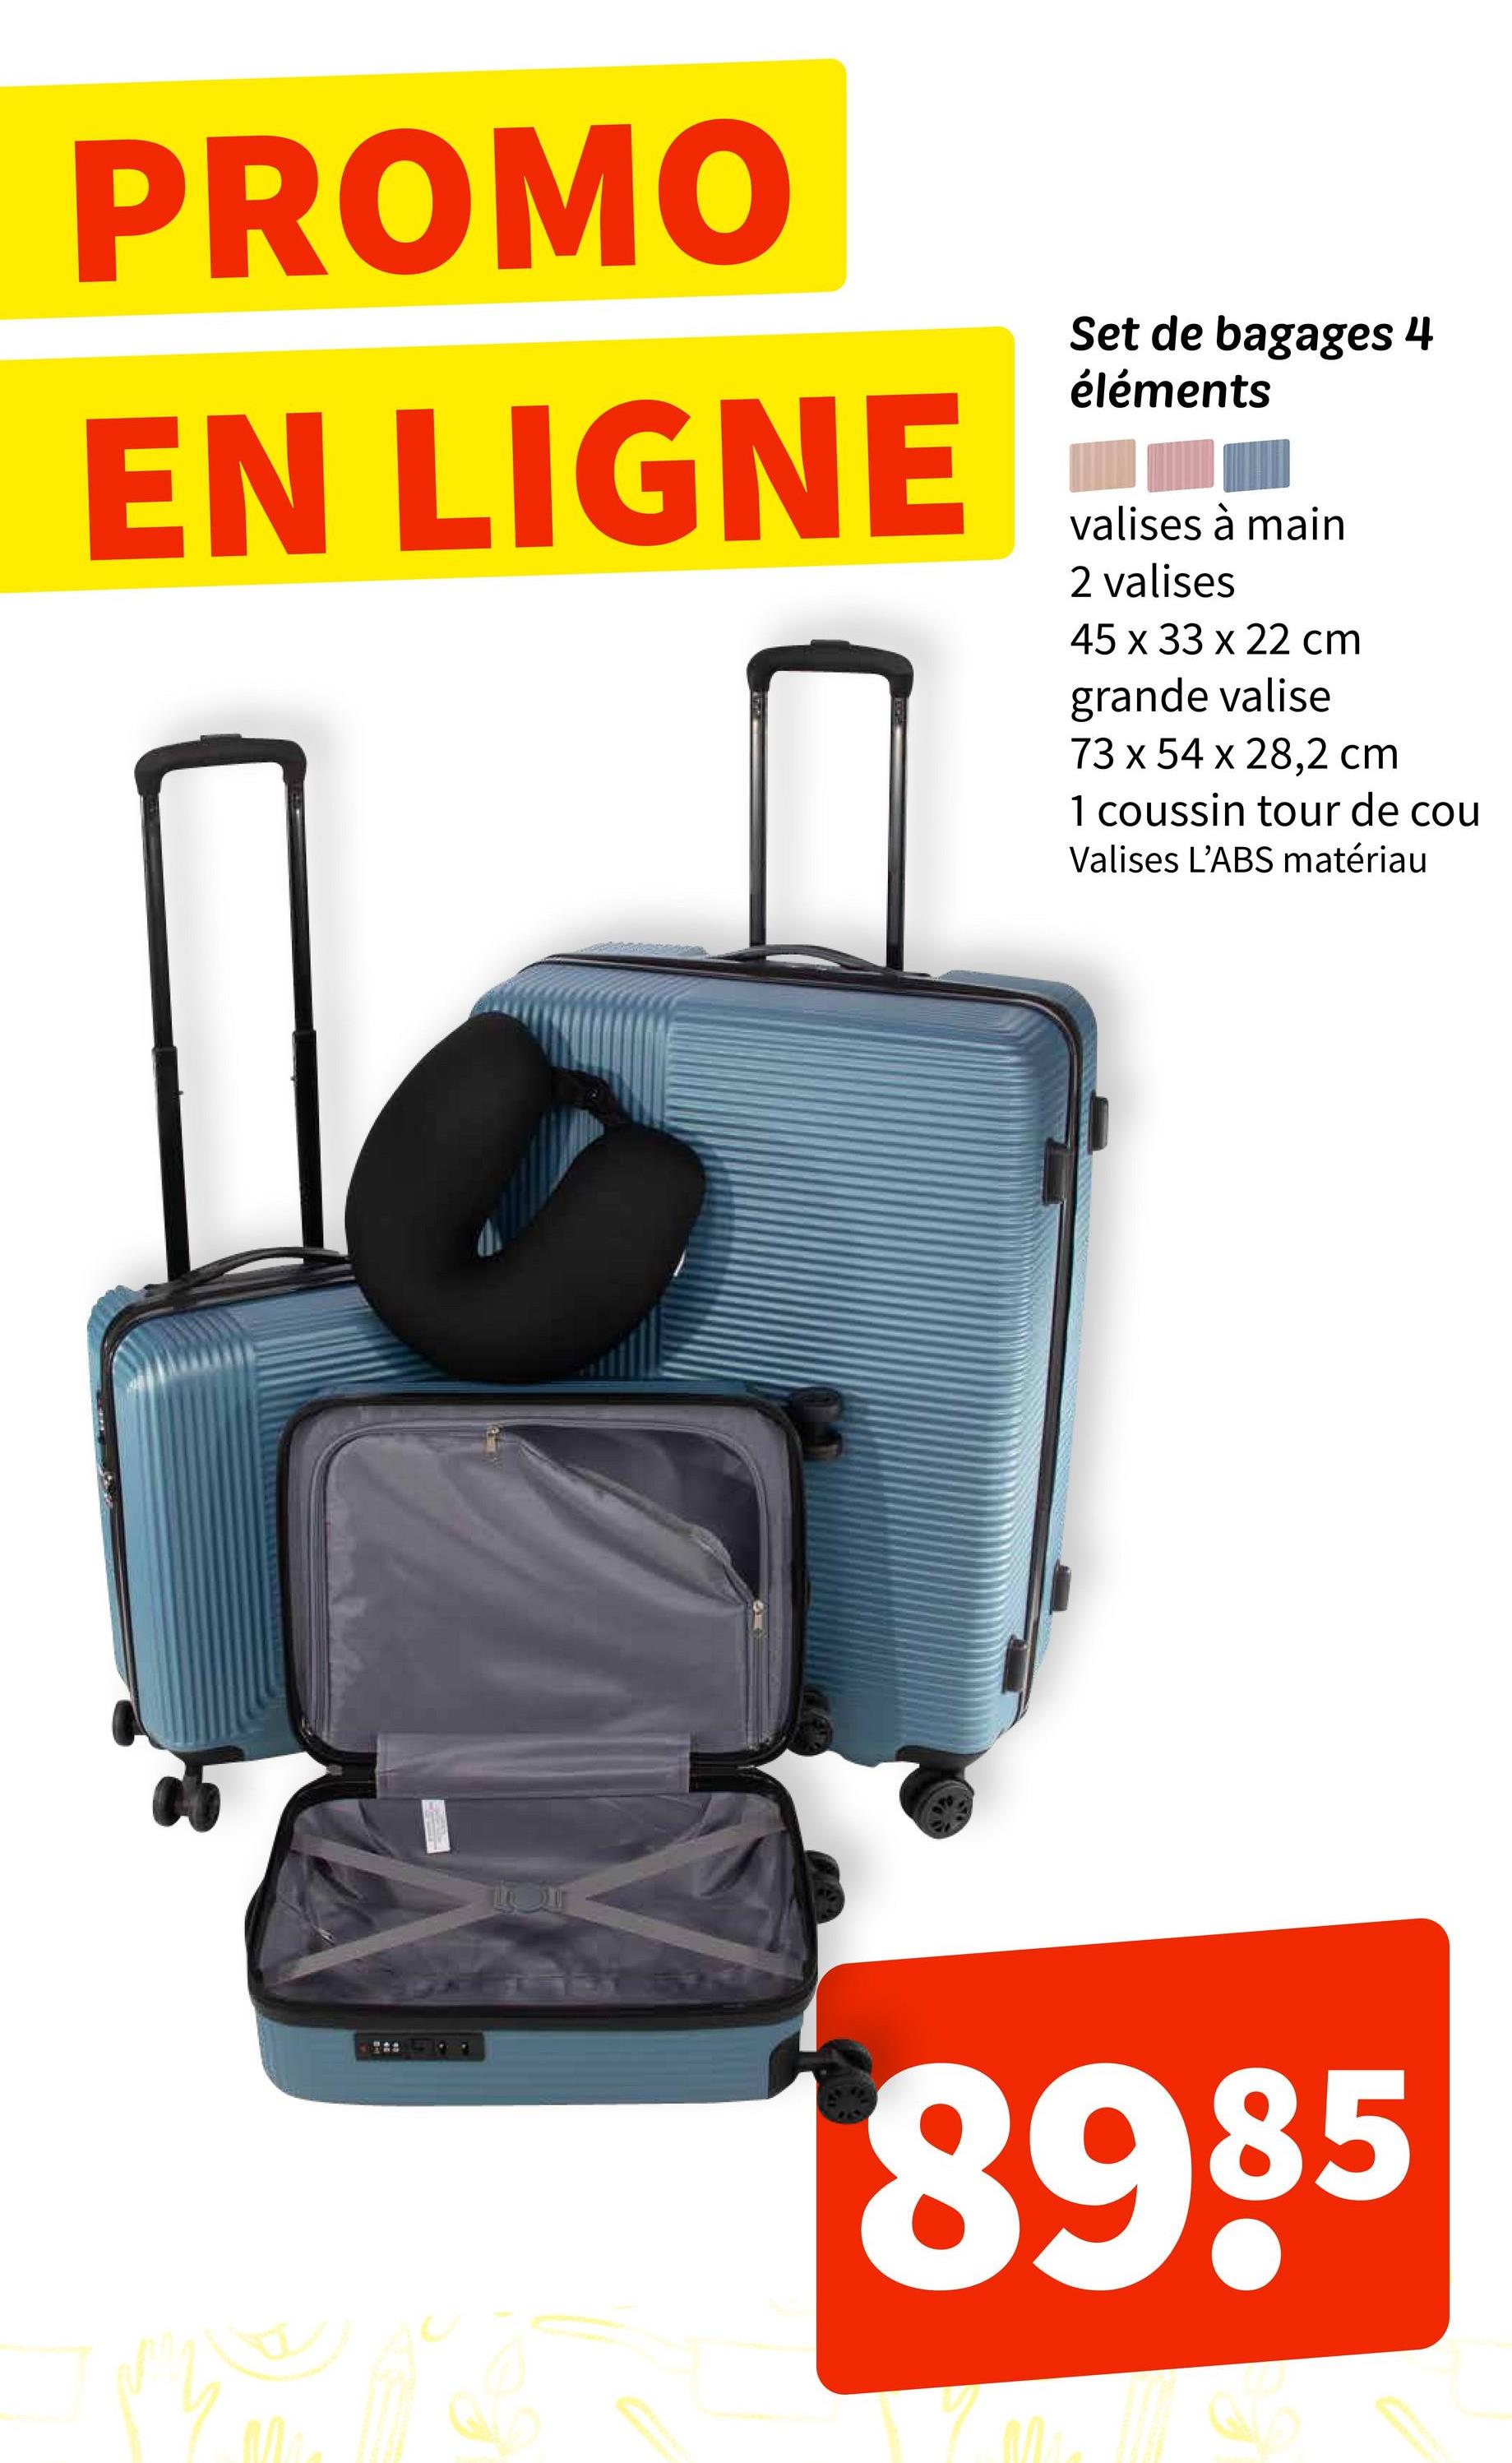 PROMO
EN LIGNE
Set de bagages 4
éléments
valises à main
2 valises
45 x 33 x 22 cm
grande valise
73 x 54 x 28,2 cm
1 coussin tour de cou
Valises L'ABS matériau
8985